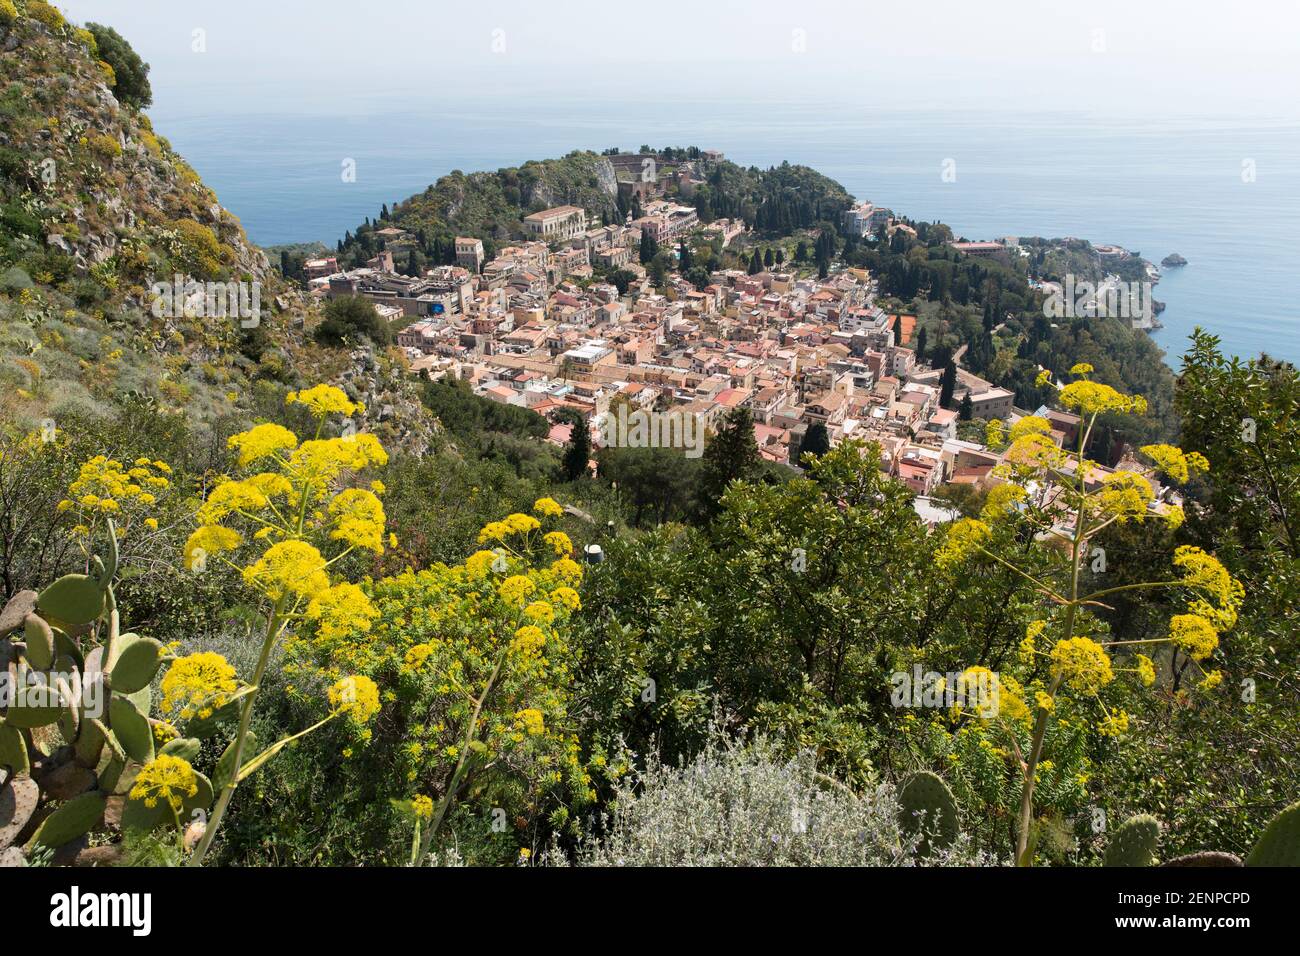 Italia, Sicilia, Taormina, vista de la ciudad desde una ruta de senderismo que muestra la ciudad contra el mar Foto de stock